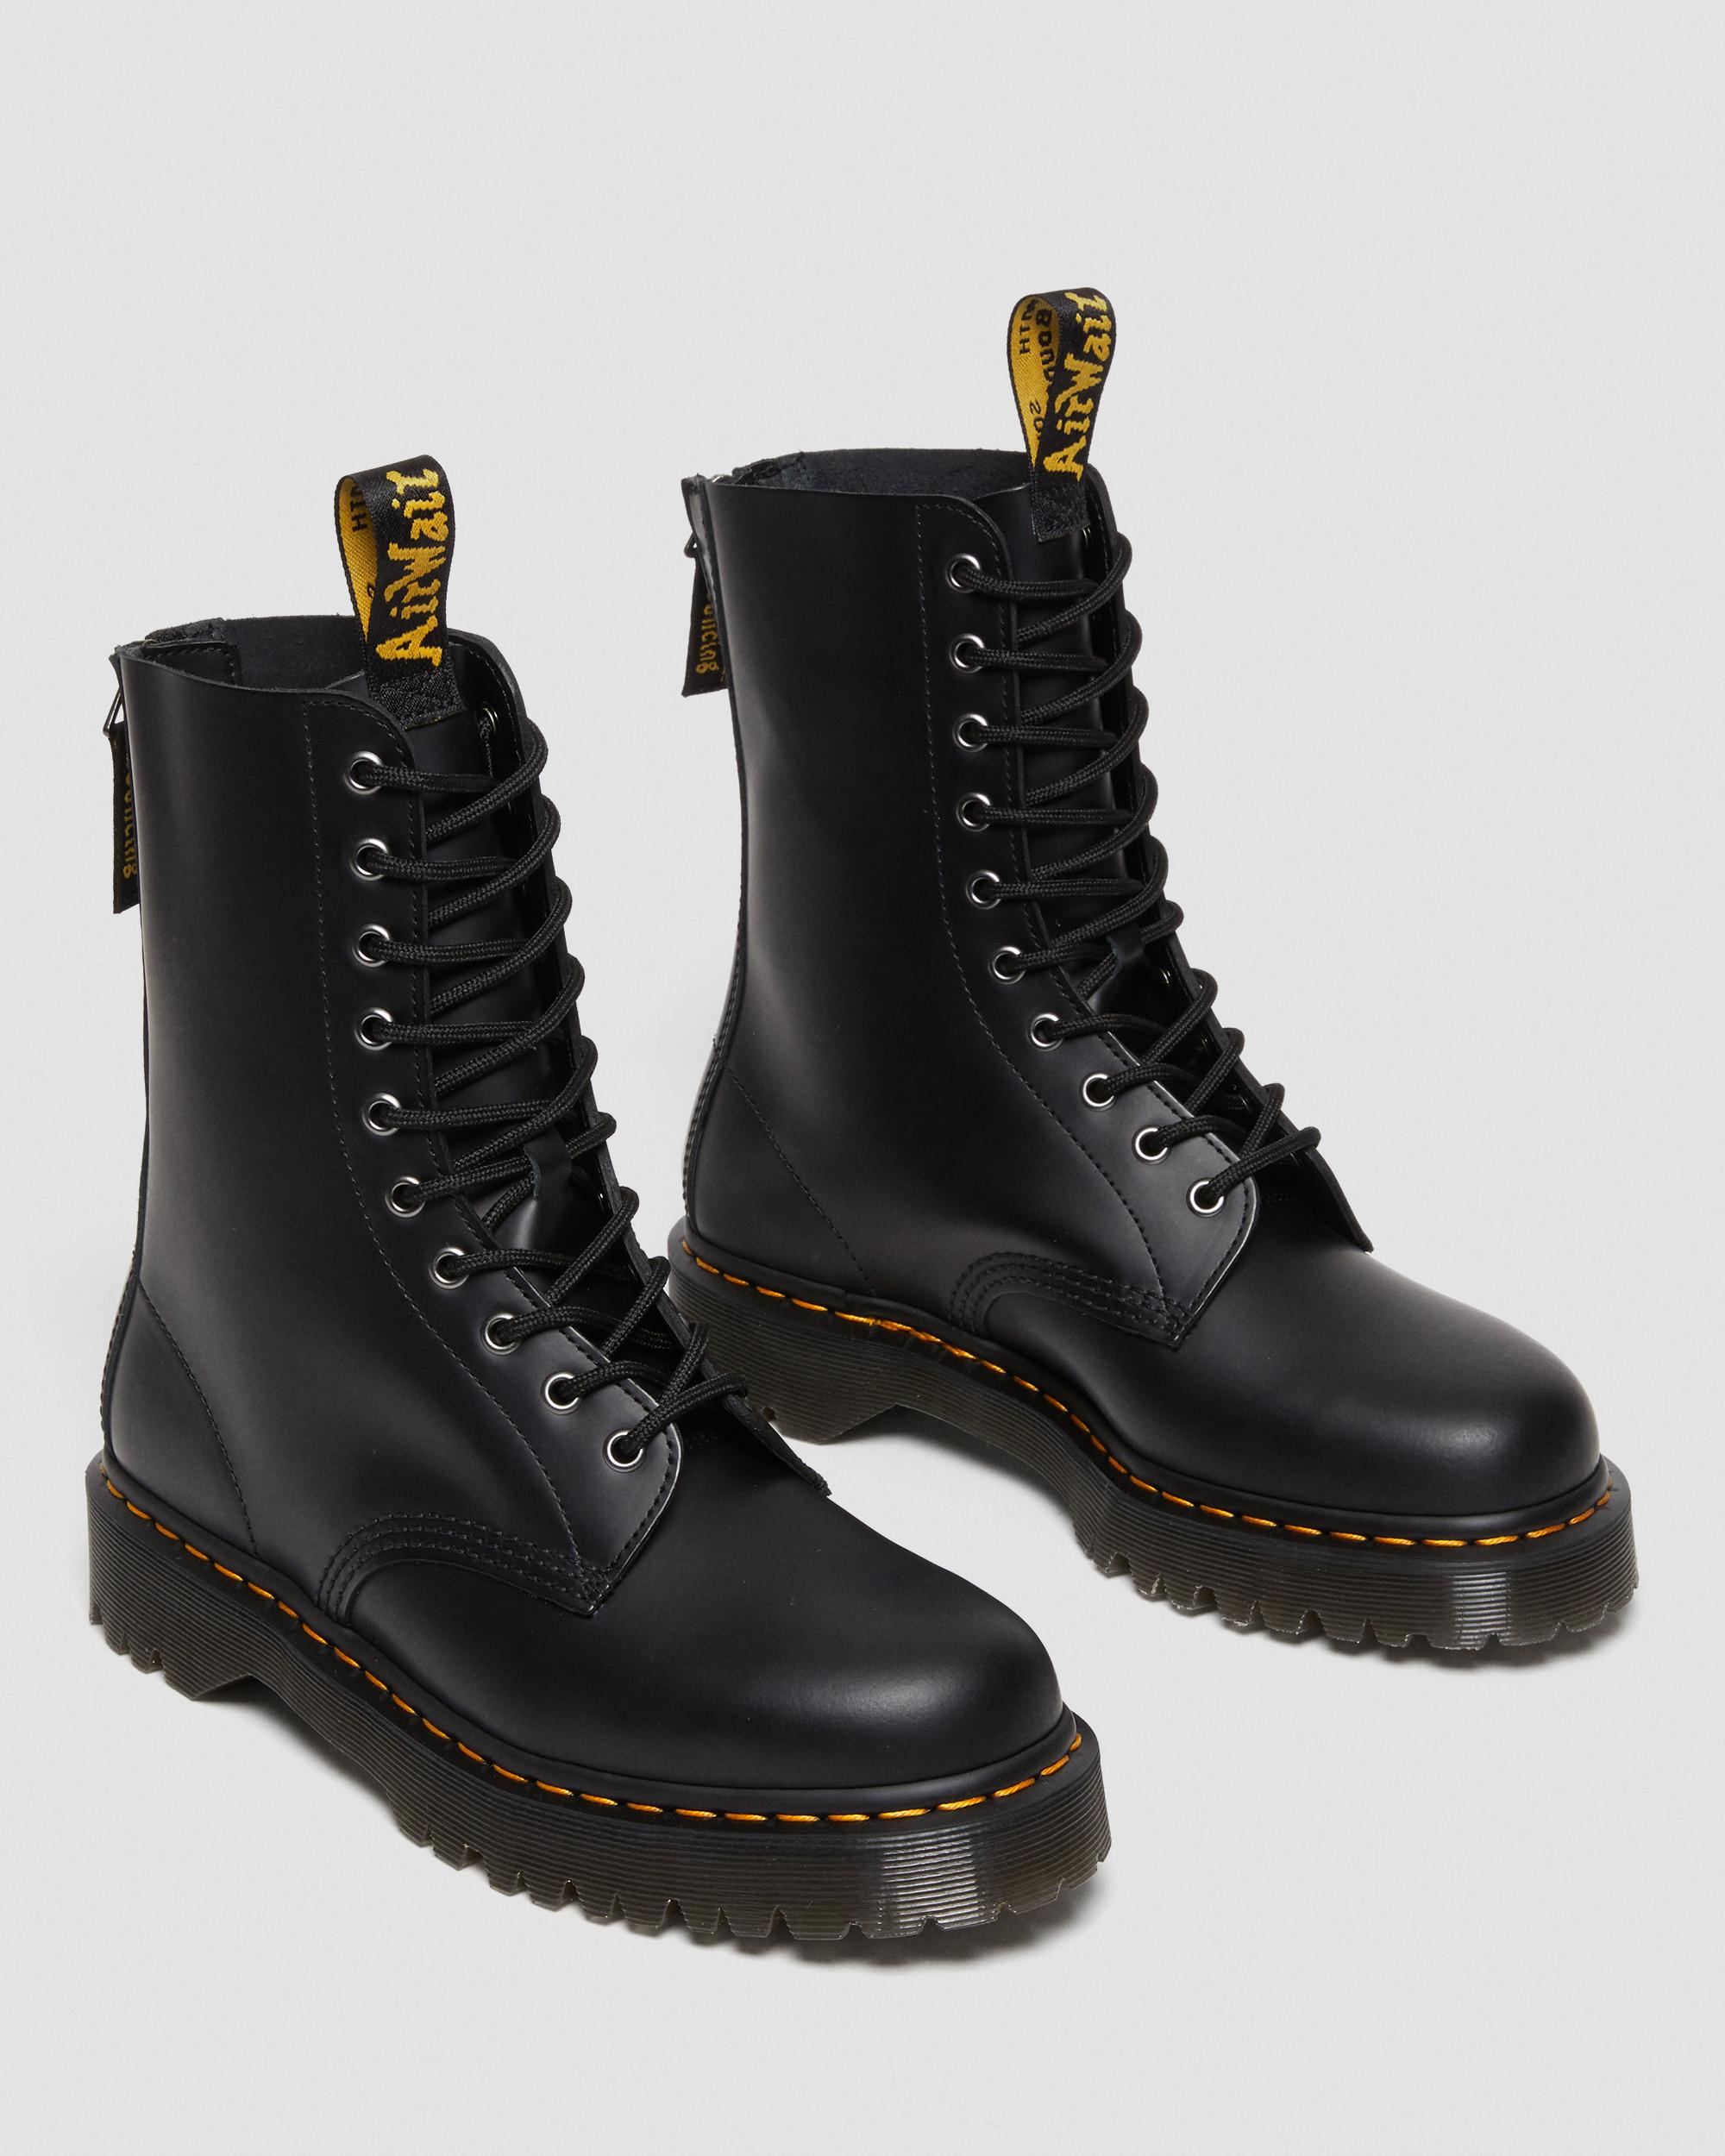 1490 Hi Bex Zip Leather Boots in Black | Dr. Martens